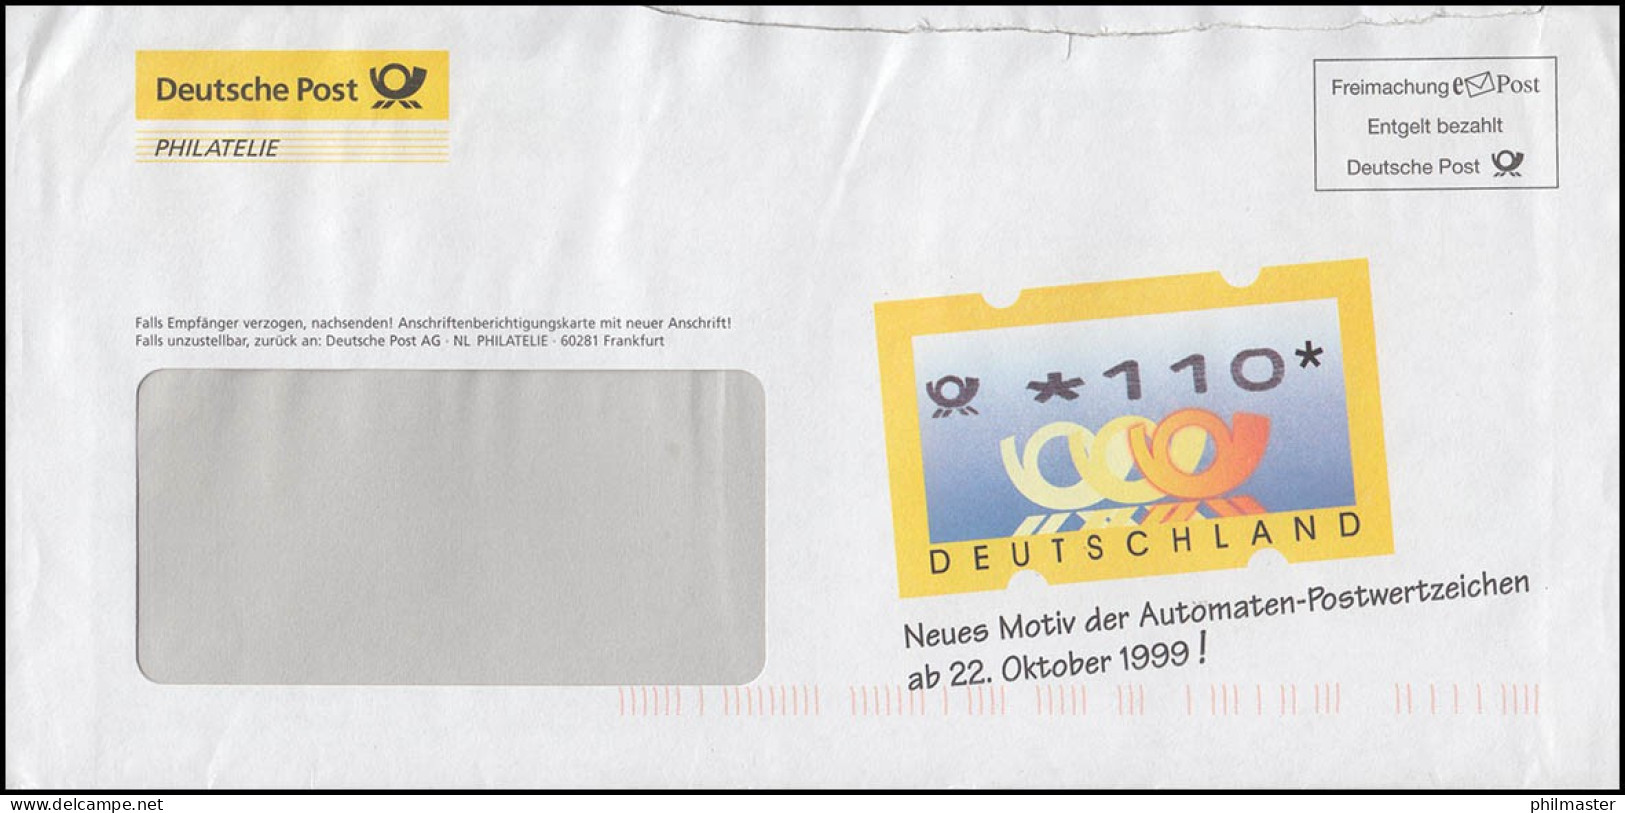 Freimachung EPost - Werbebrief Der Post Für Neue ATM Posthörner, September 1999 - Vignette [ATM]